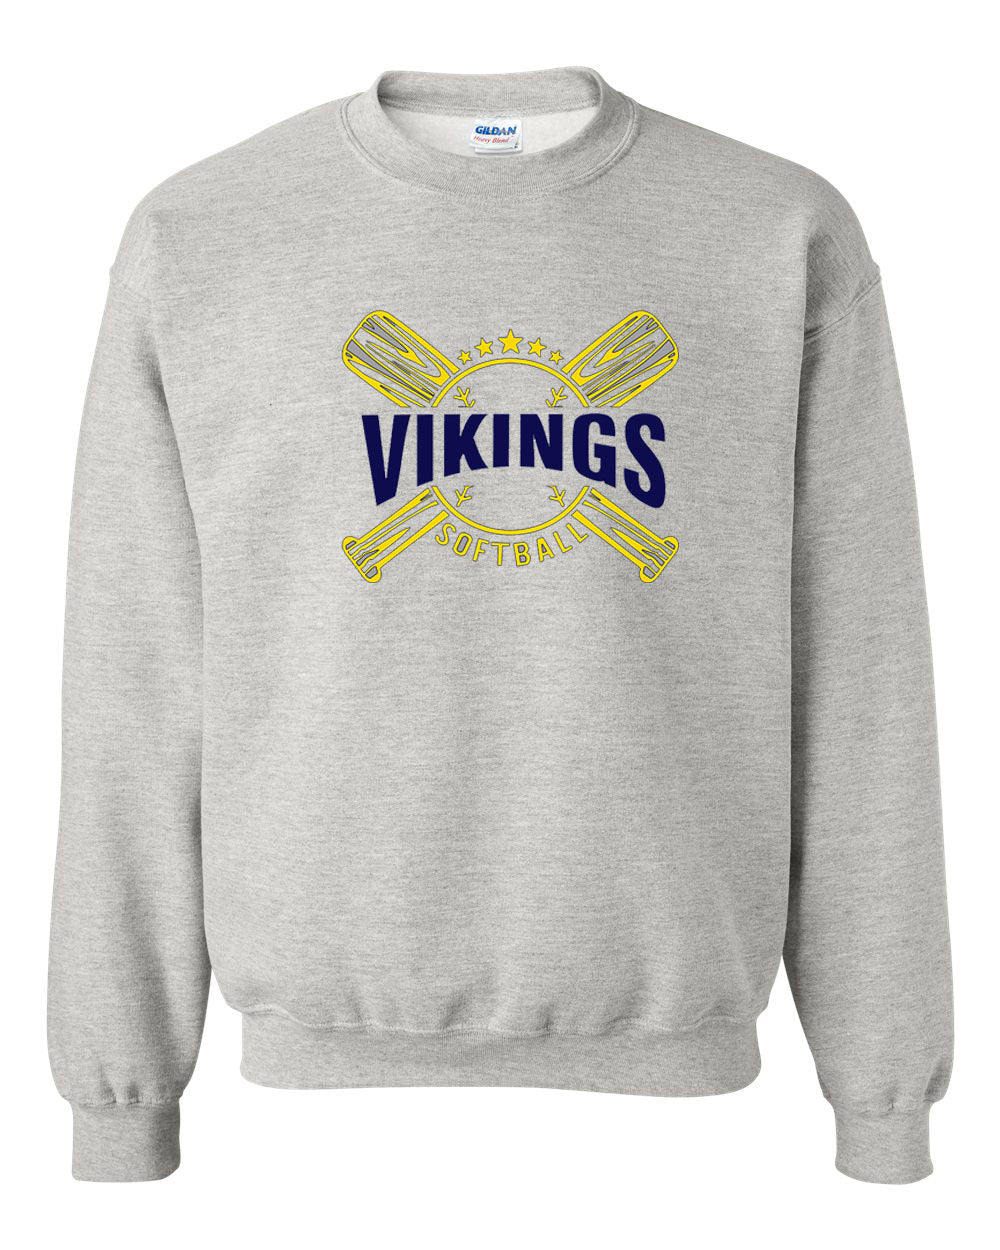 Vikings Bats Softball non hooded sweatshirt